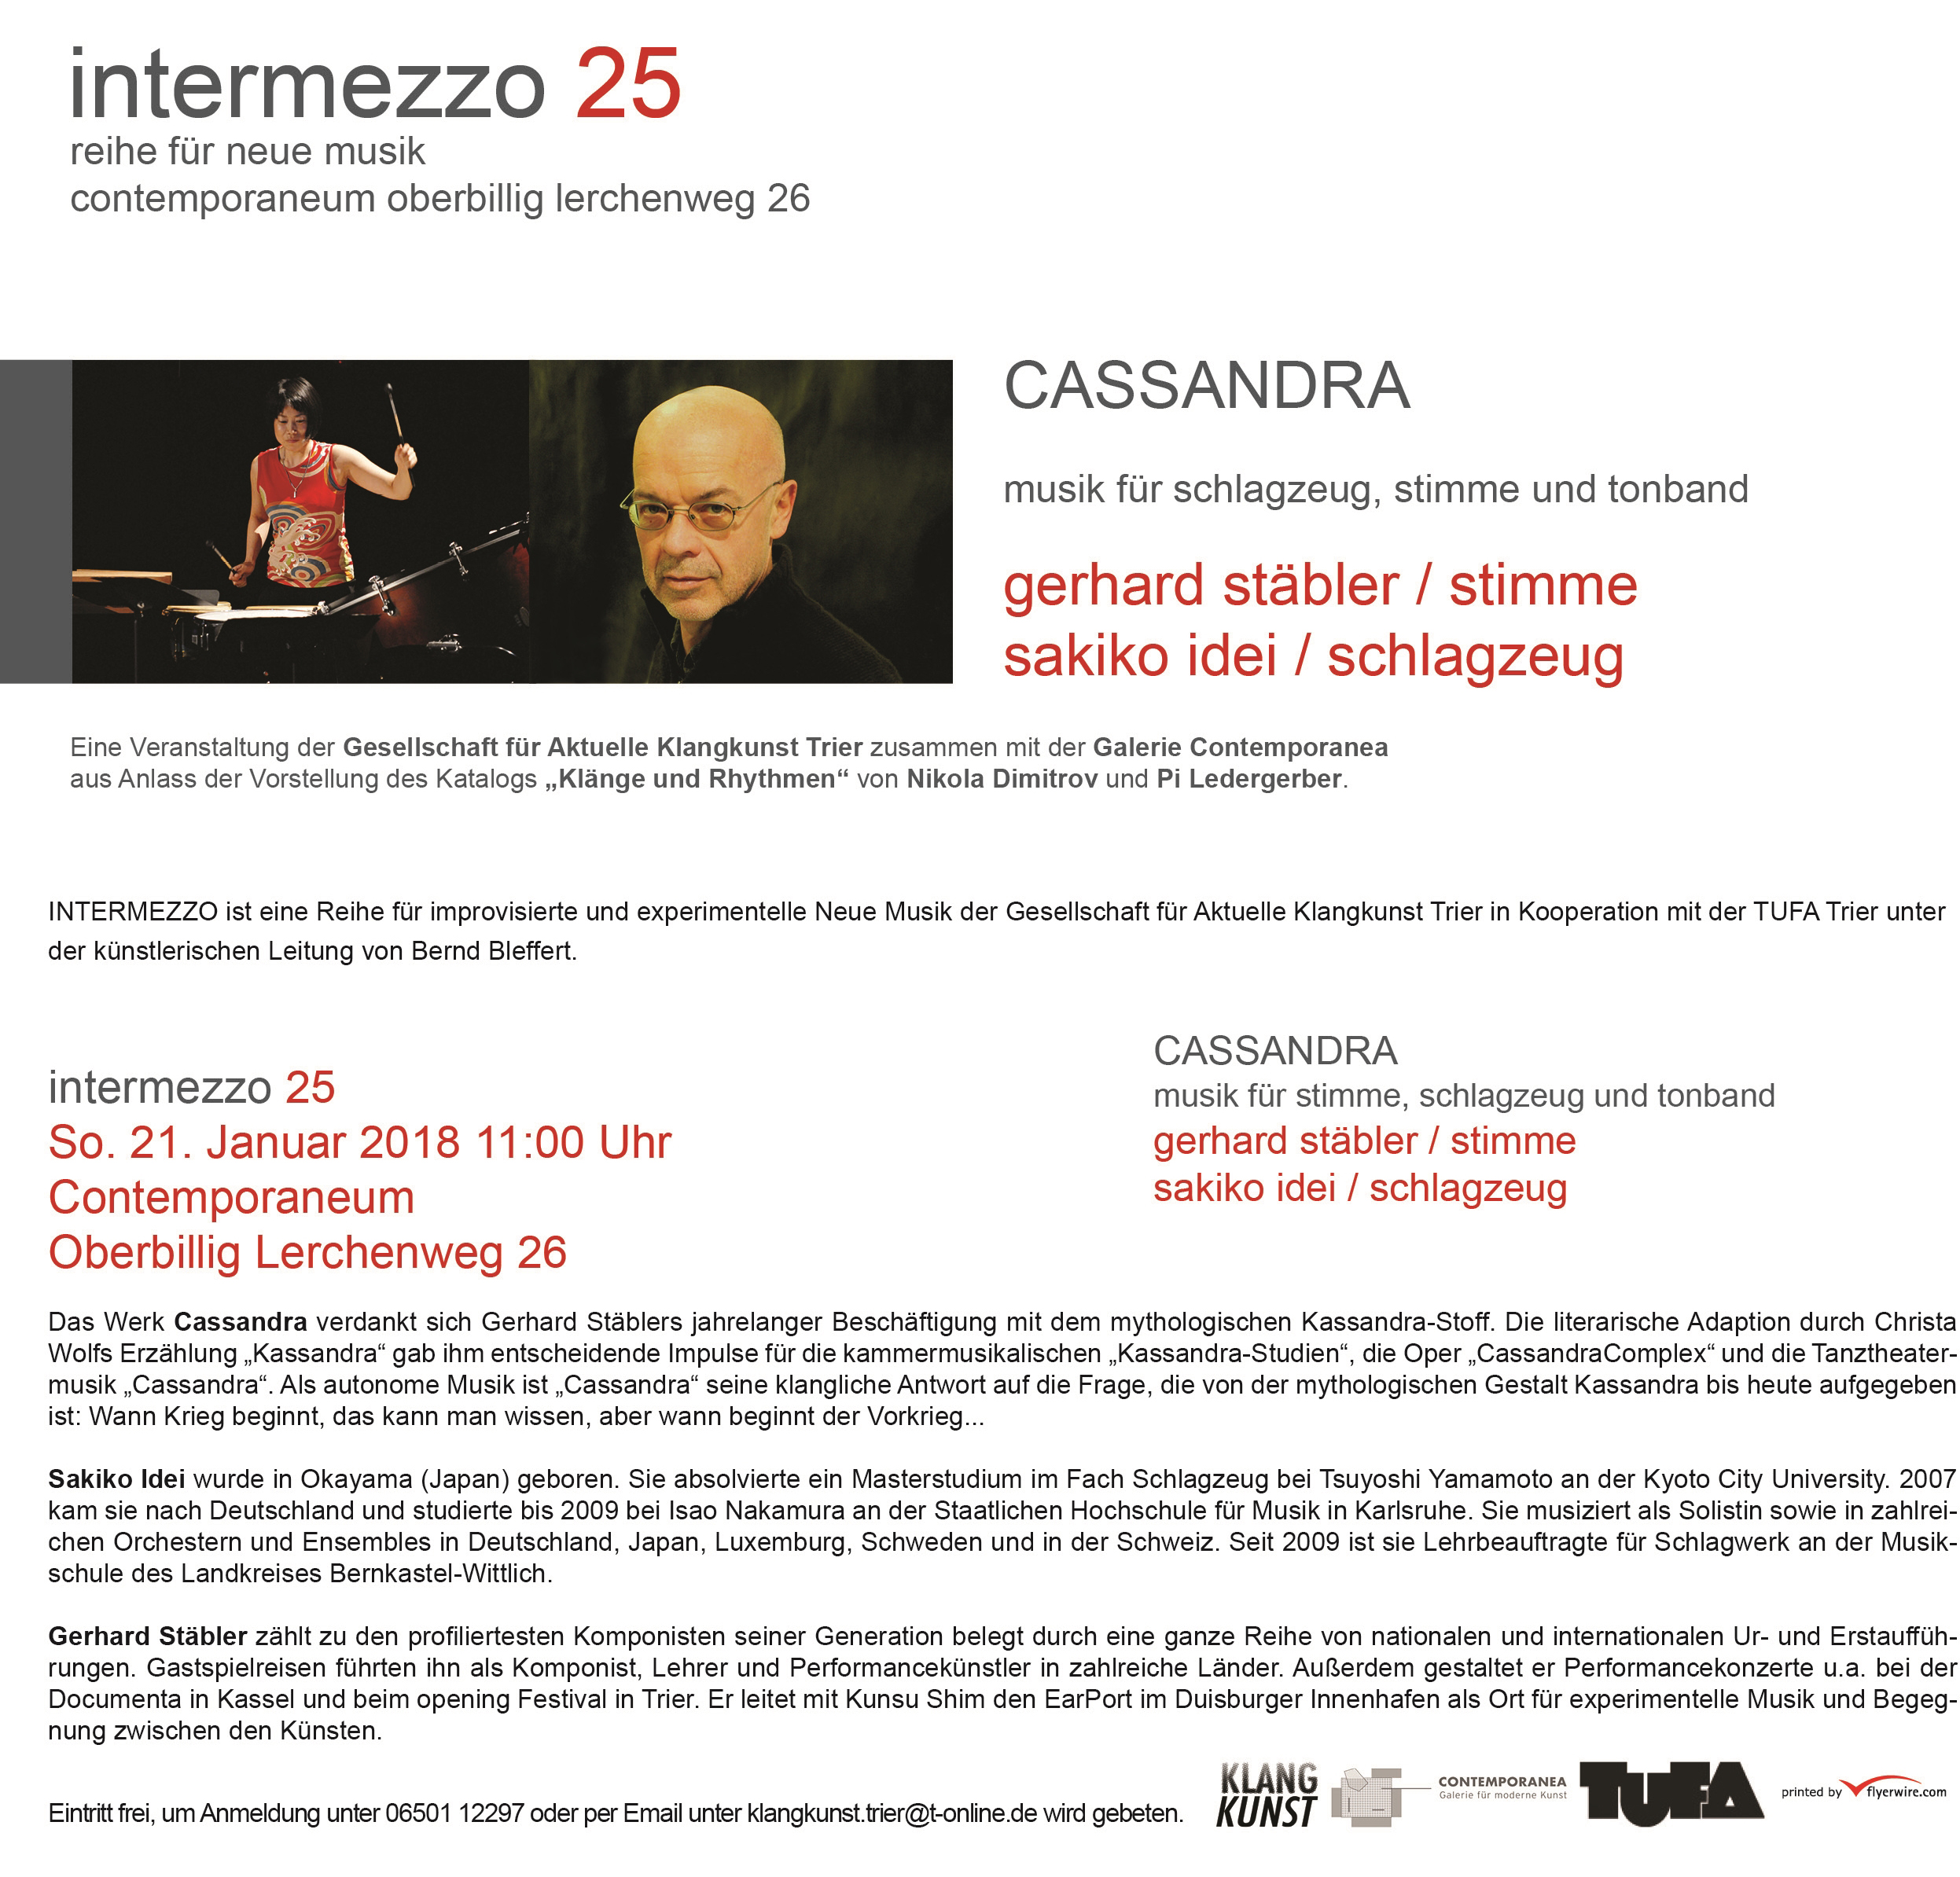 Konzertinformationen zum Intermezzo25 / Cassandra / Komposition von und mit Gerhard Stäbler